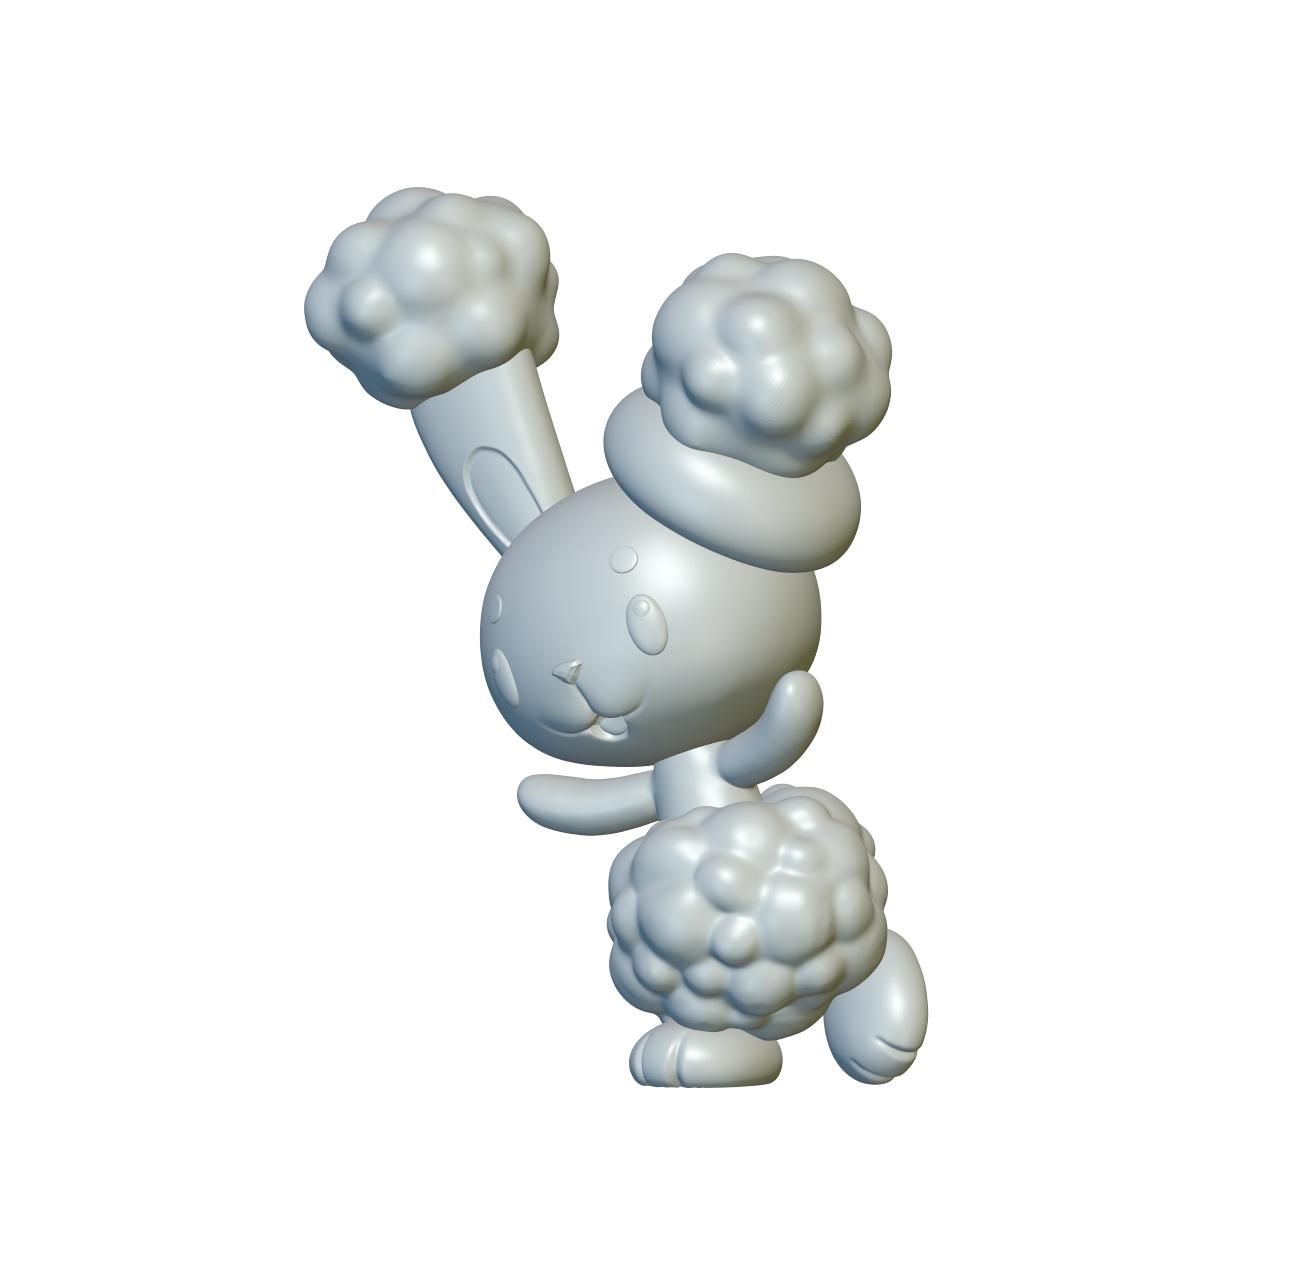 Pokemon Buneary #427 - Optimized for 3D Printing 3d model